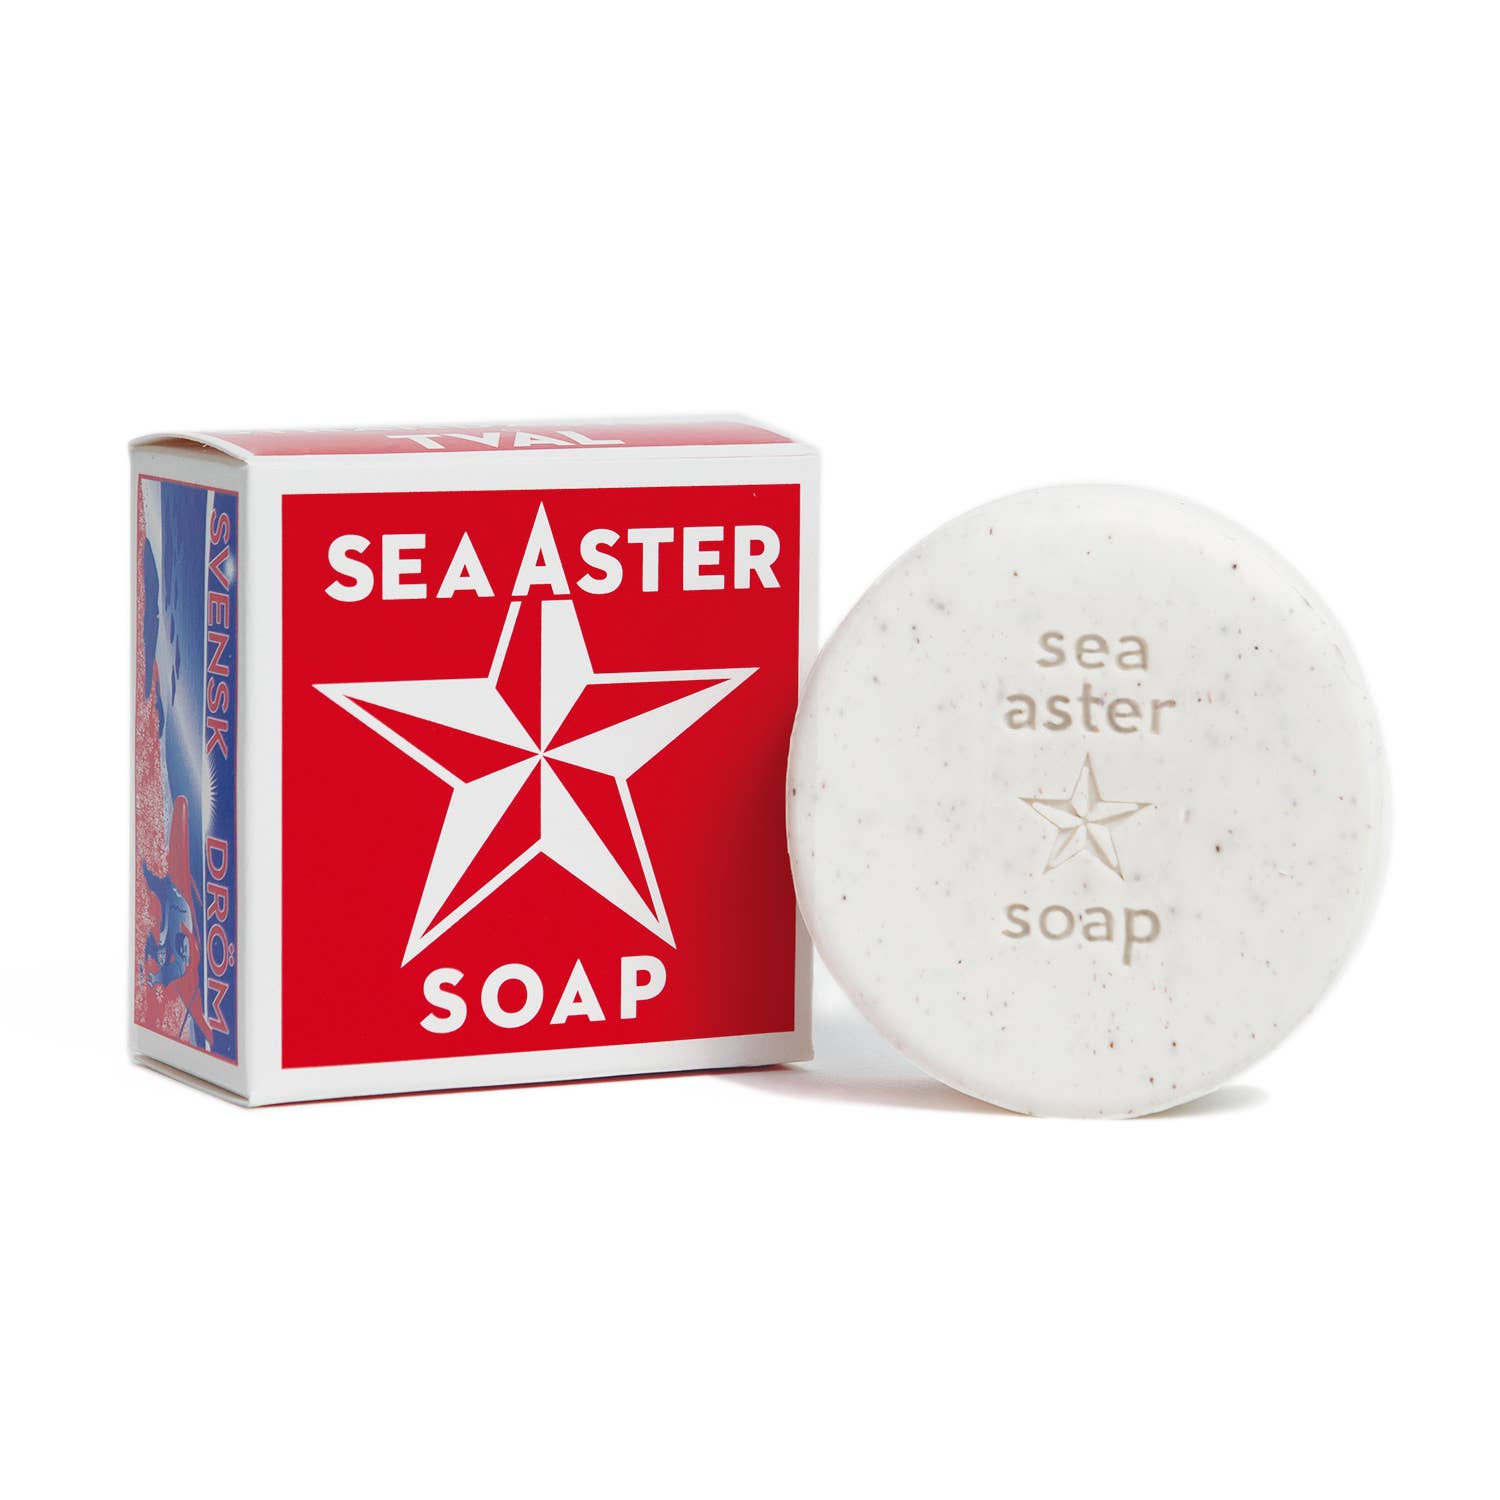 Soap: Sea Aster Soap - Swedish Dream